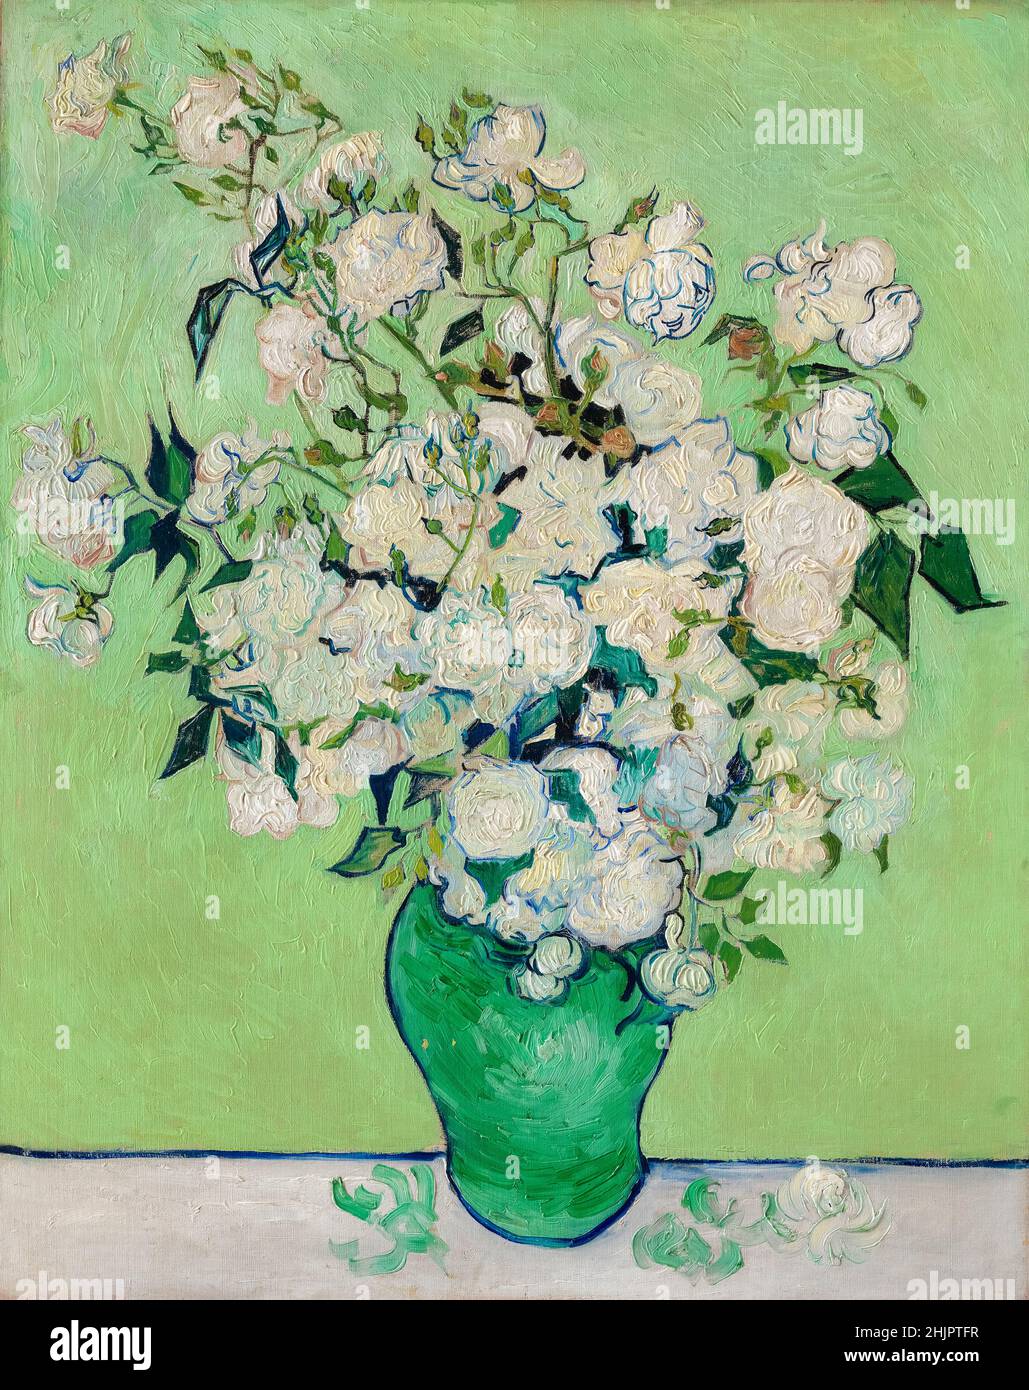 Vincent van Gogh, Roses, peinture encore vivant, 1890 la couleur rose des pétales et de la nappe s'est estompée avec l'âge Banque D'Images